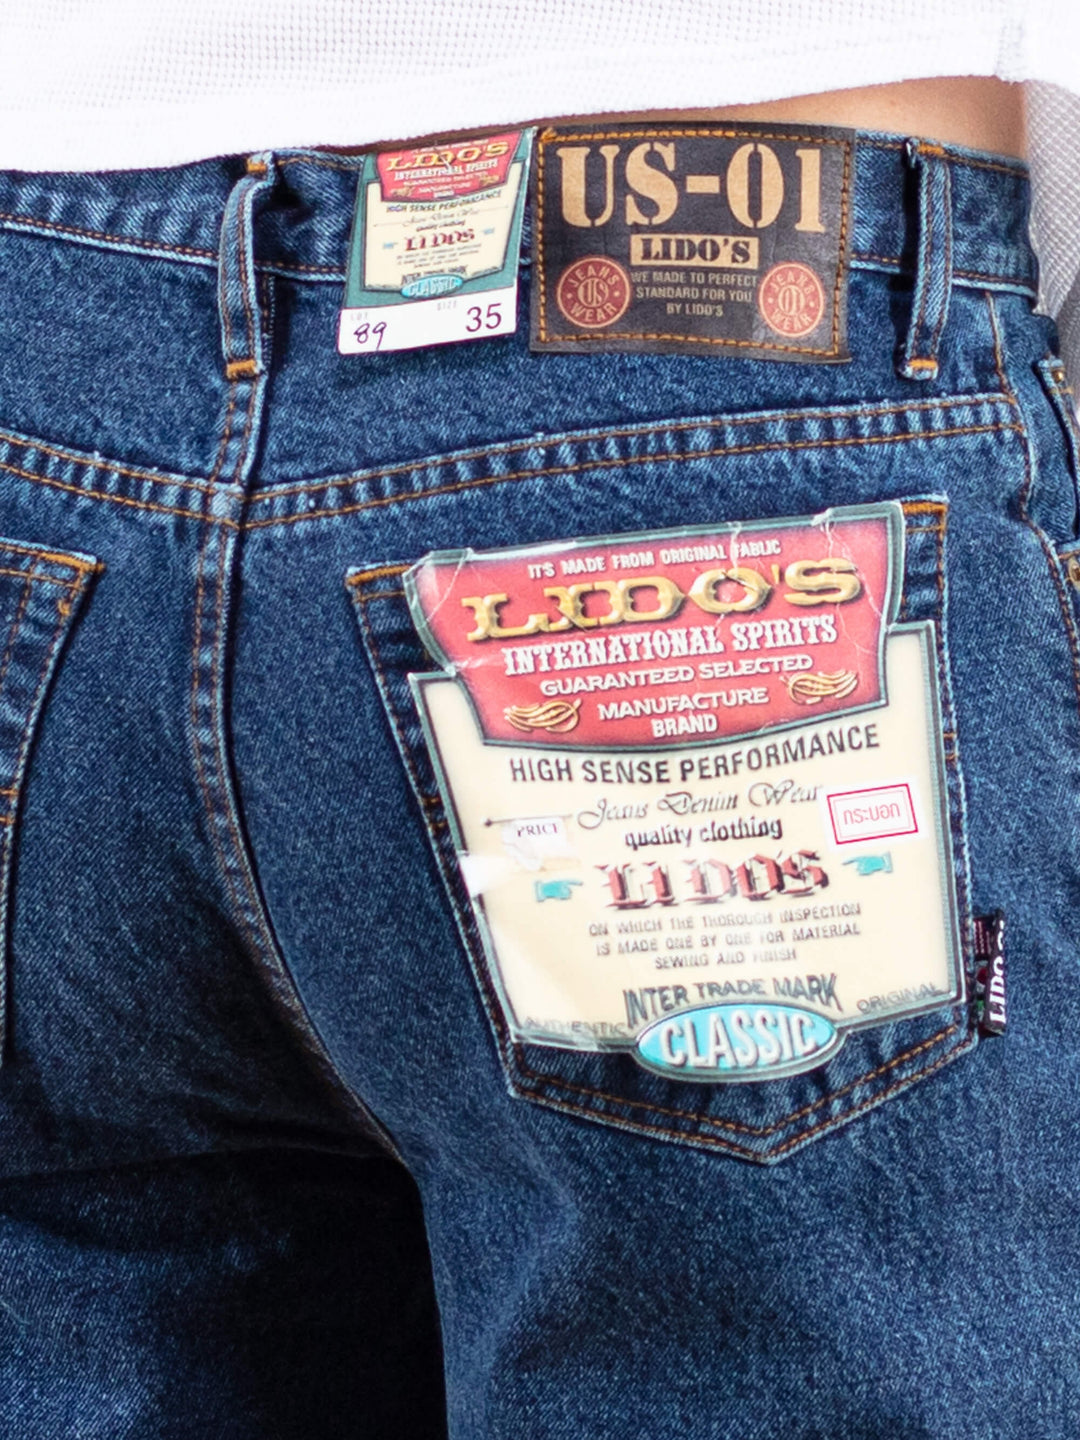 Vintage 90's Dark Wash Jeans